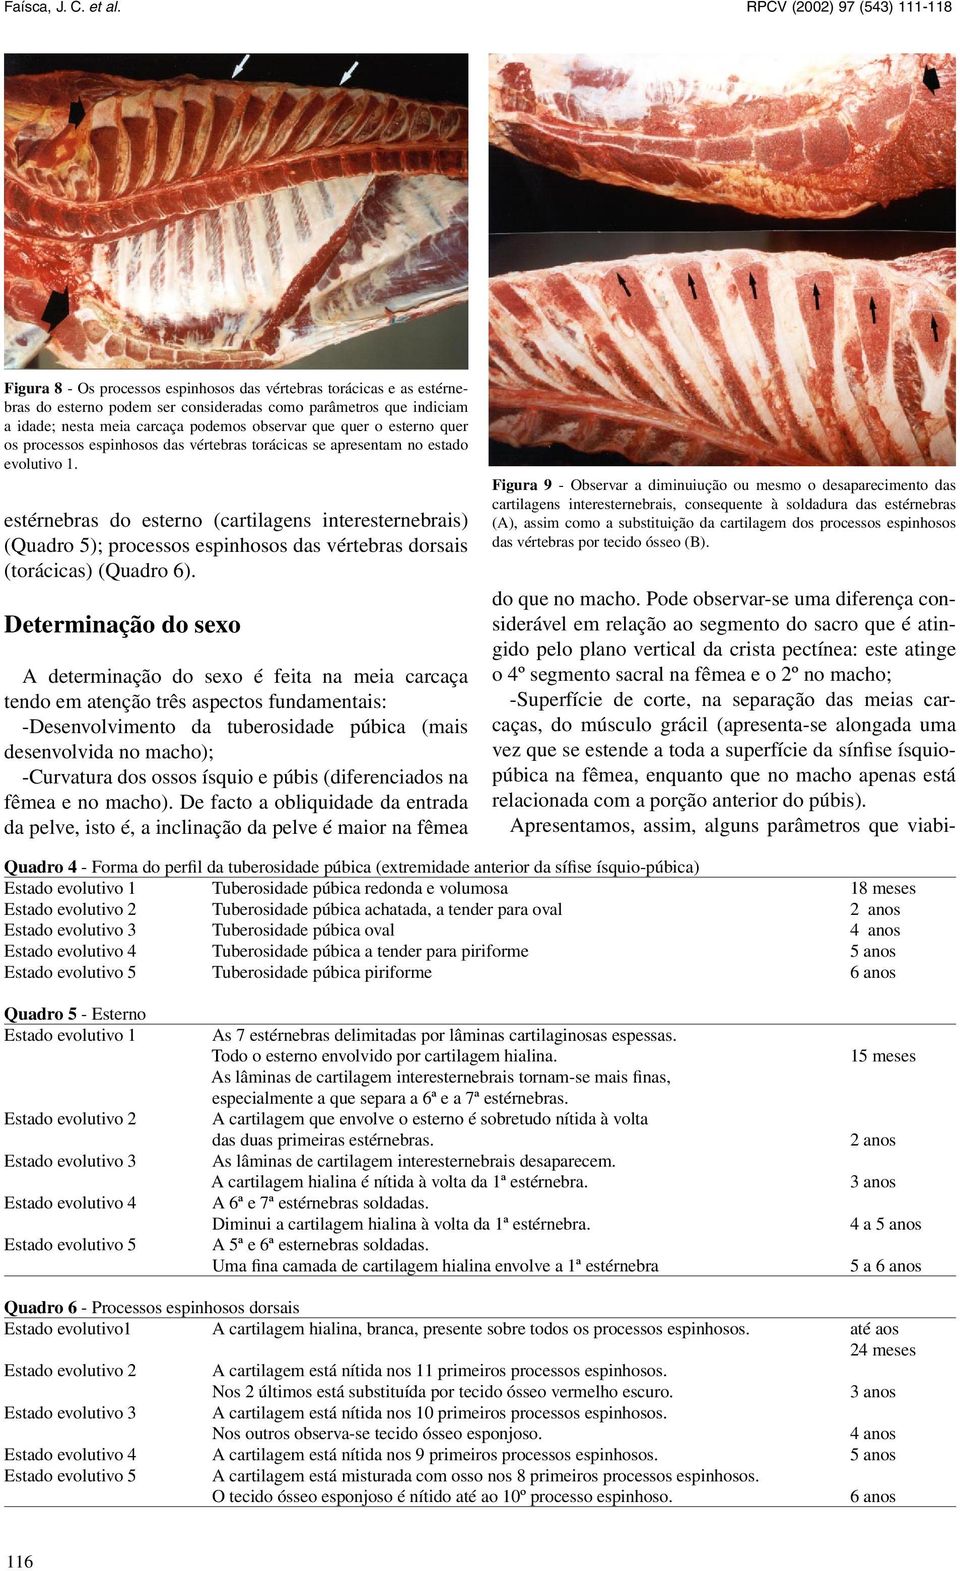 estérnebras do esterno (cartilagens interesternebrais) (Quadro 5); processos espinhosos das vértebras dorsais (torácicas) (Quadro 6).